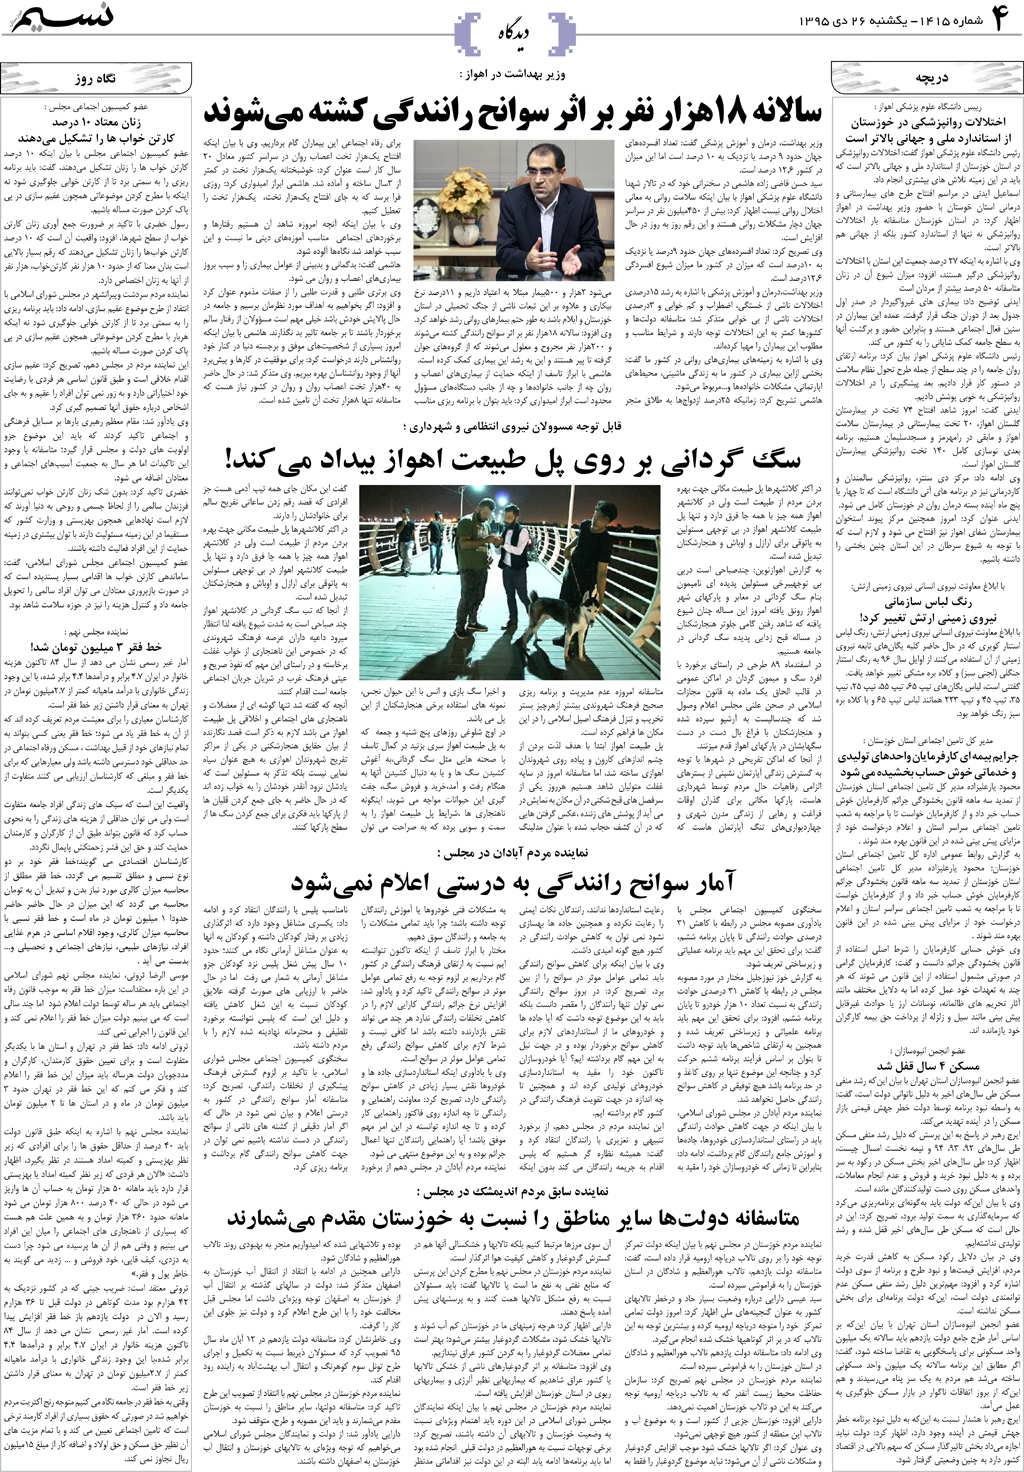 صفحه دیدگاه روزنامه نسیم شماره 1415